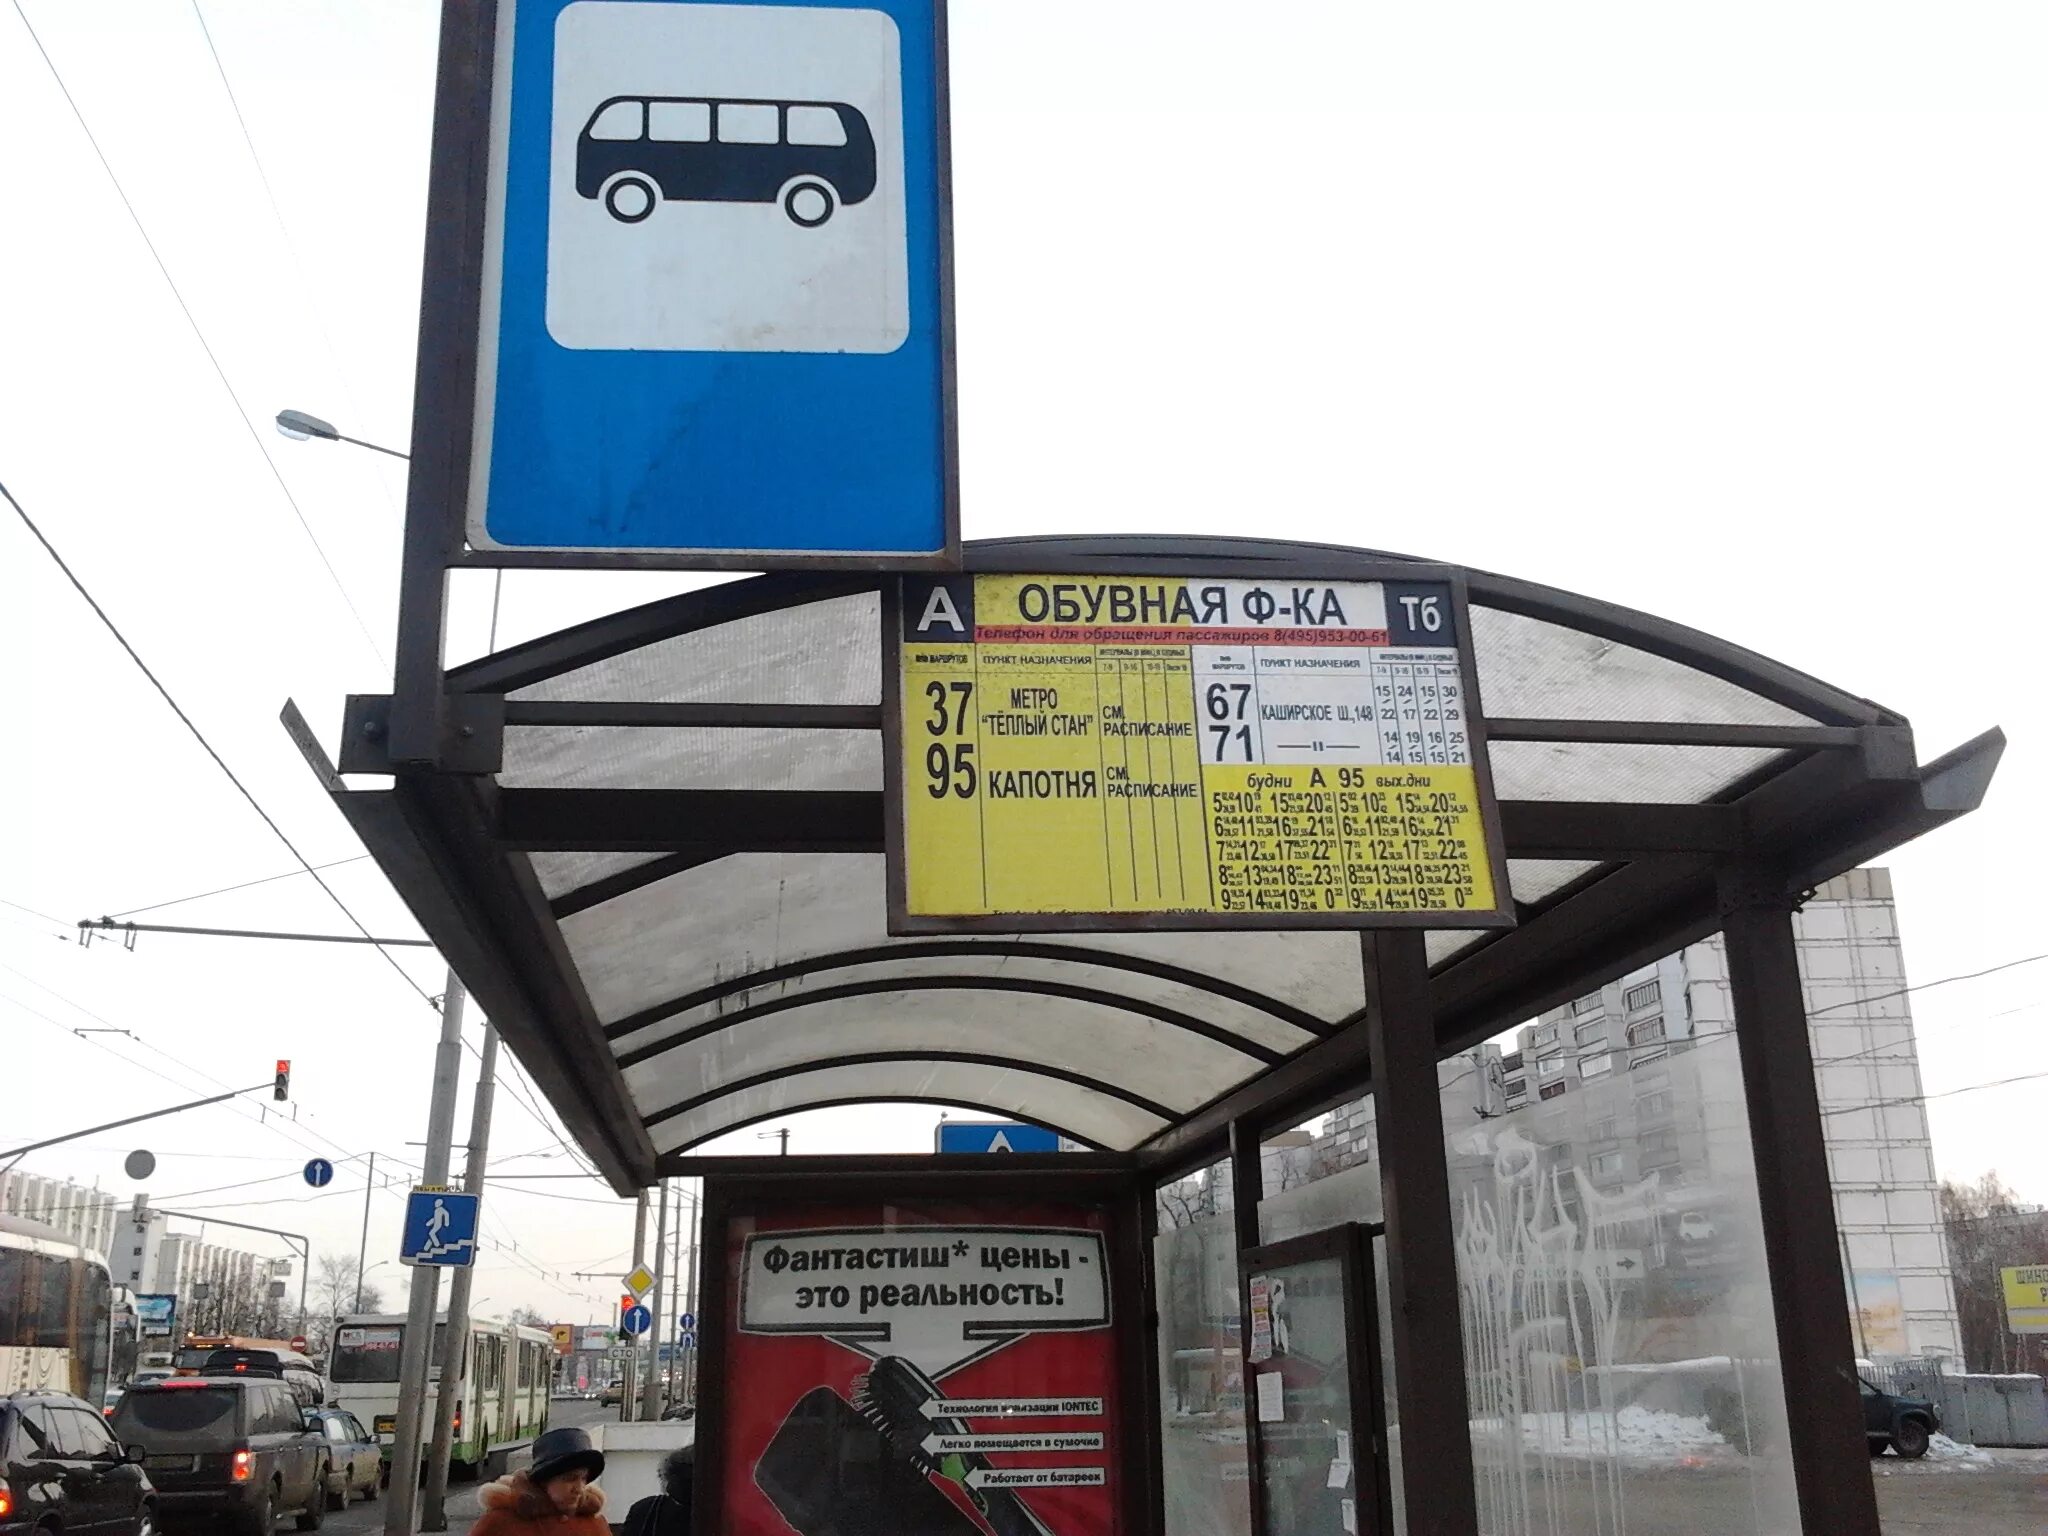 Автобус номер б. Название остановок общественного транспорта. Остановка общественного транспорта Москва. Остановки в Москве. Название автобусной остановки.